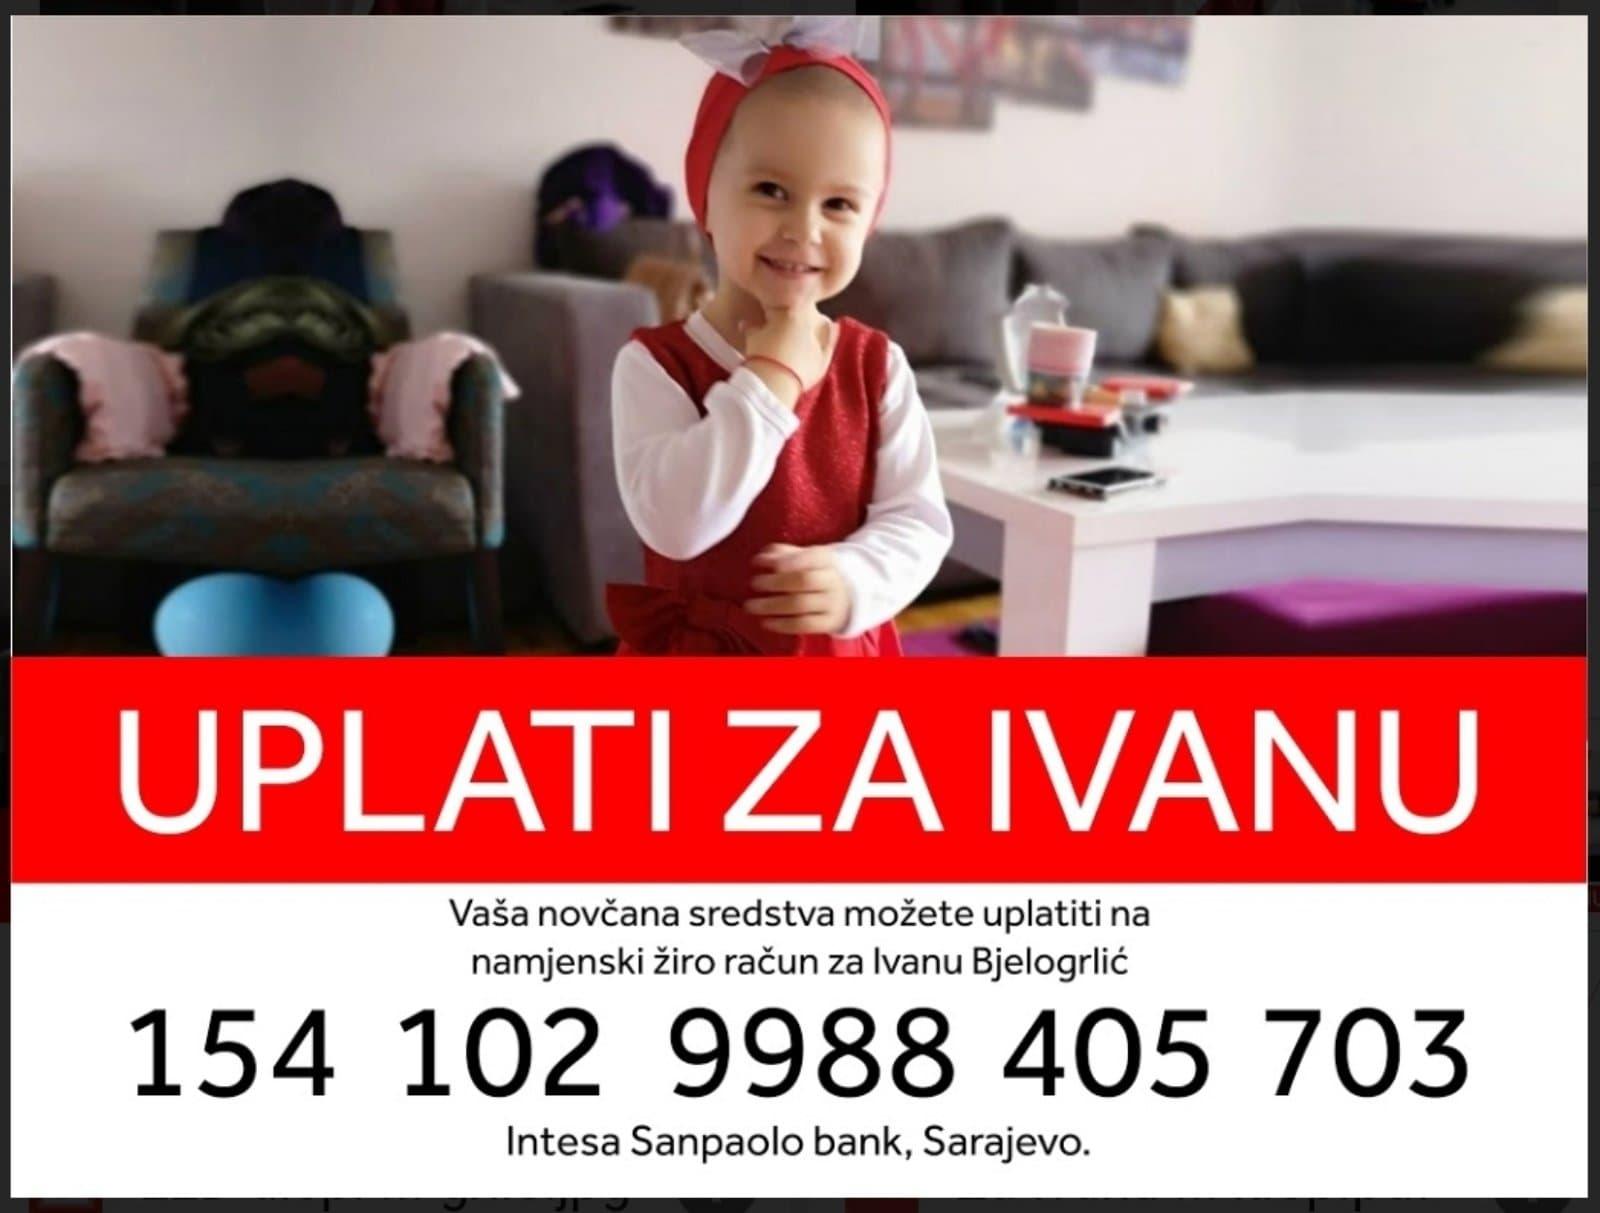 Djevojčici Ivani Bjelogrlić potrebna pomoć za liječenje karcinoma bubrega